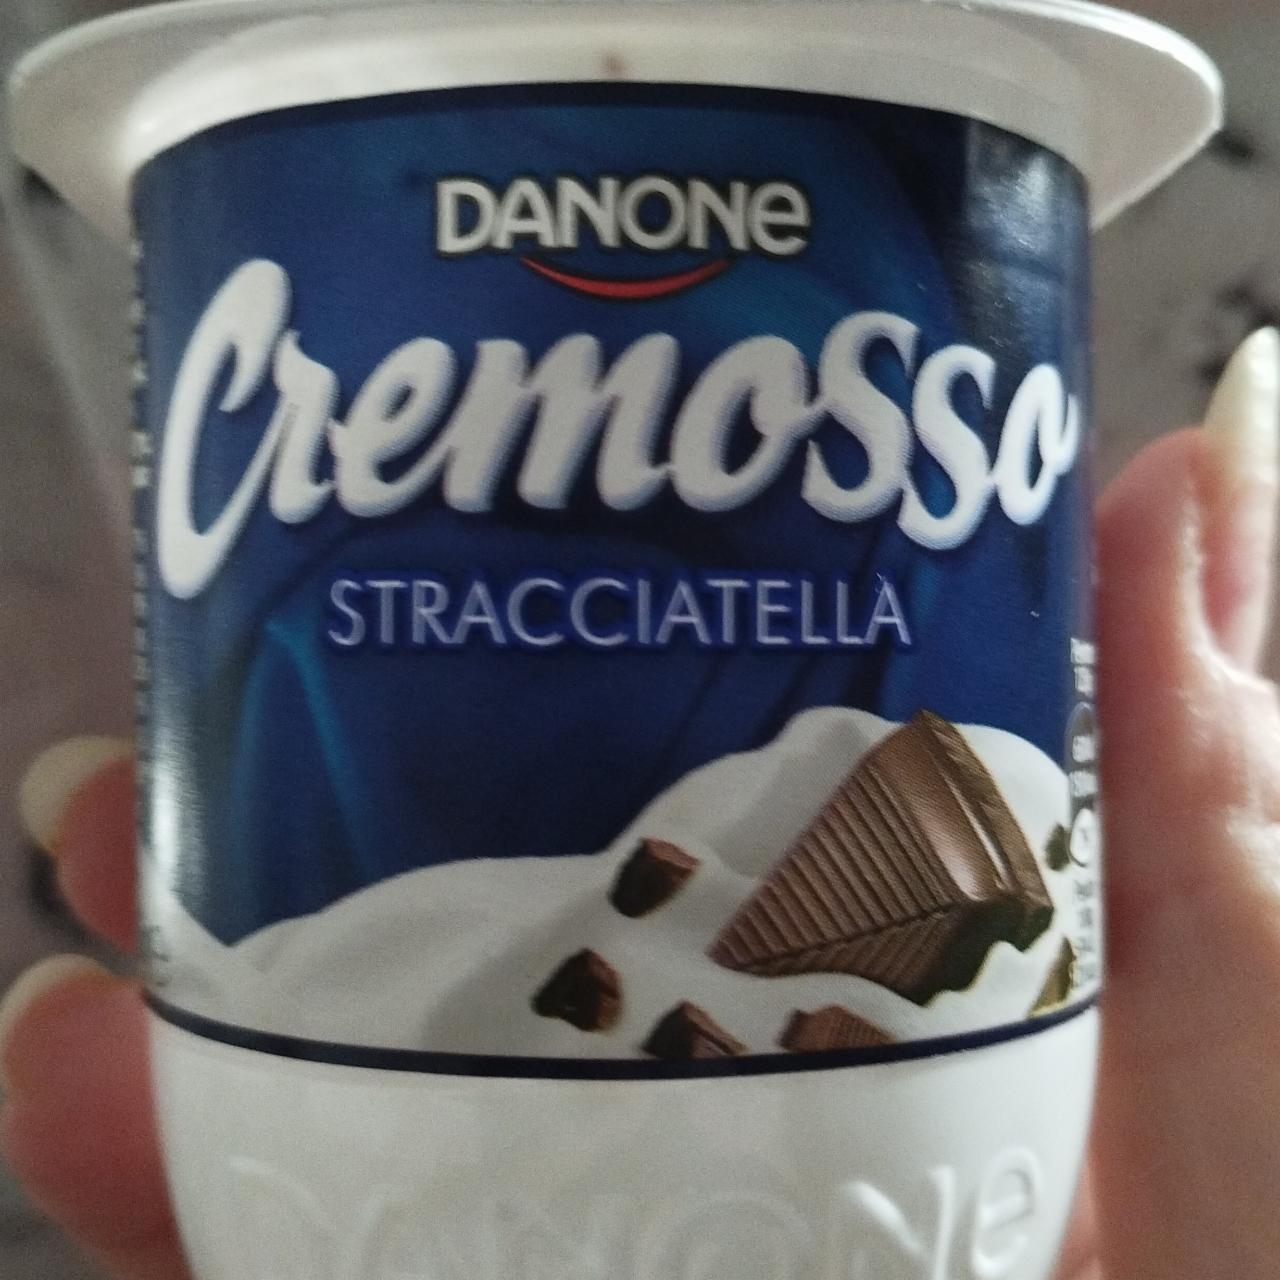 Фото - Йогурт cremosso страчателла с шоколадной крошкой Danone